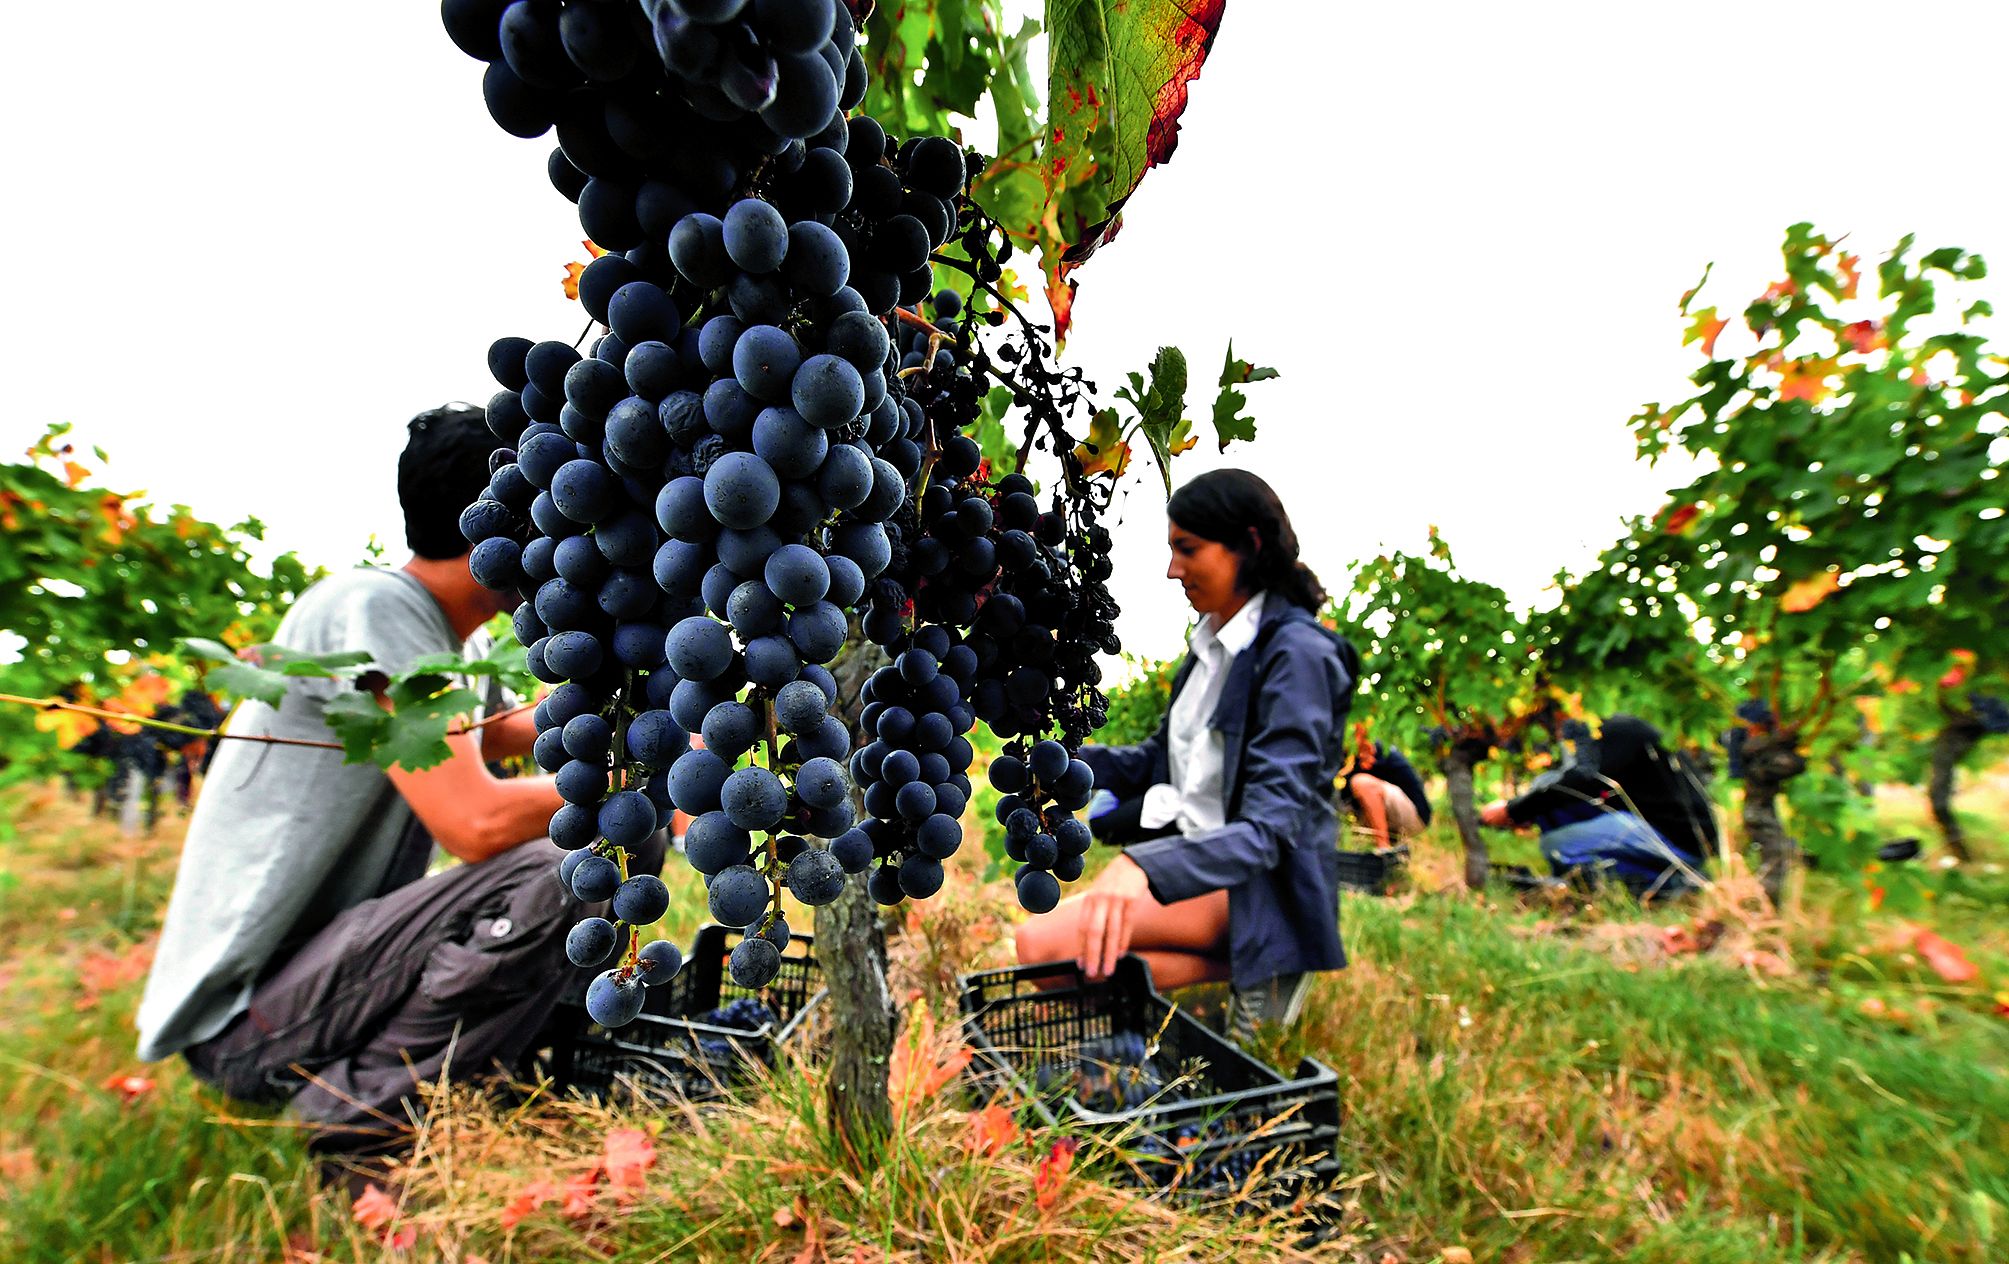 Pendant 40 ans, la vigne française, à l’exception de la bio, s’est gavée de produits chimiques, admettent les responsables viticoles français. Photo Georges Gobet/AFP